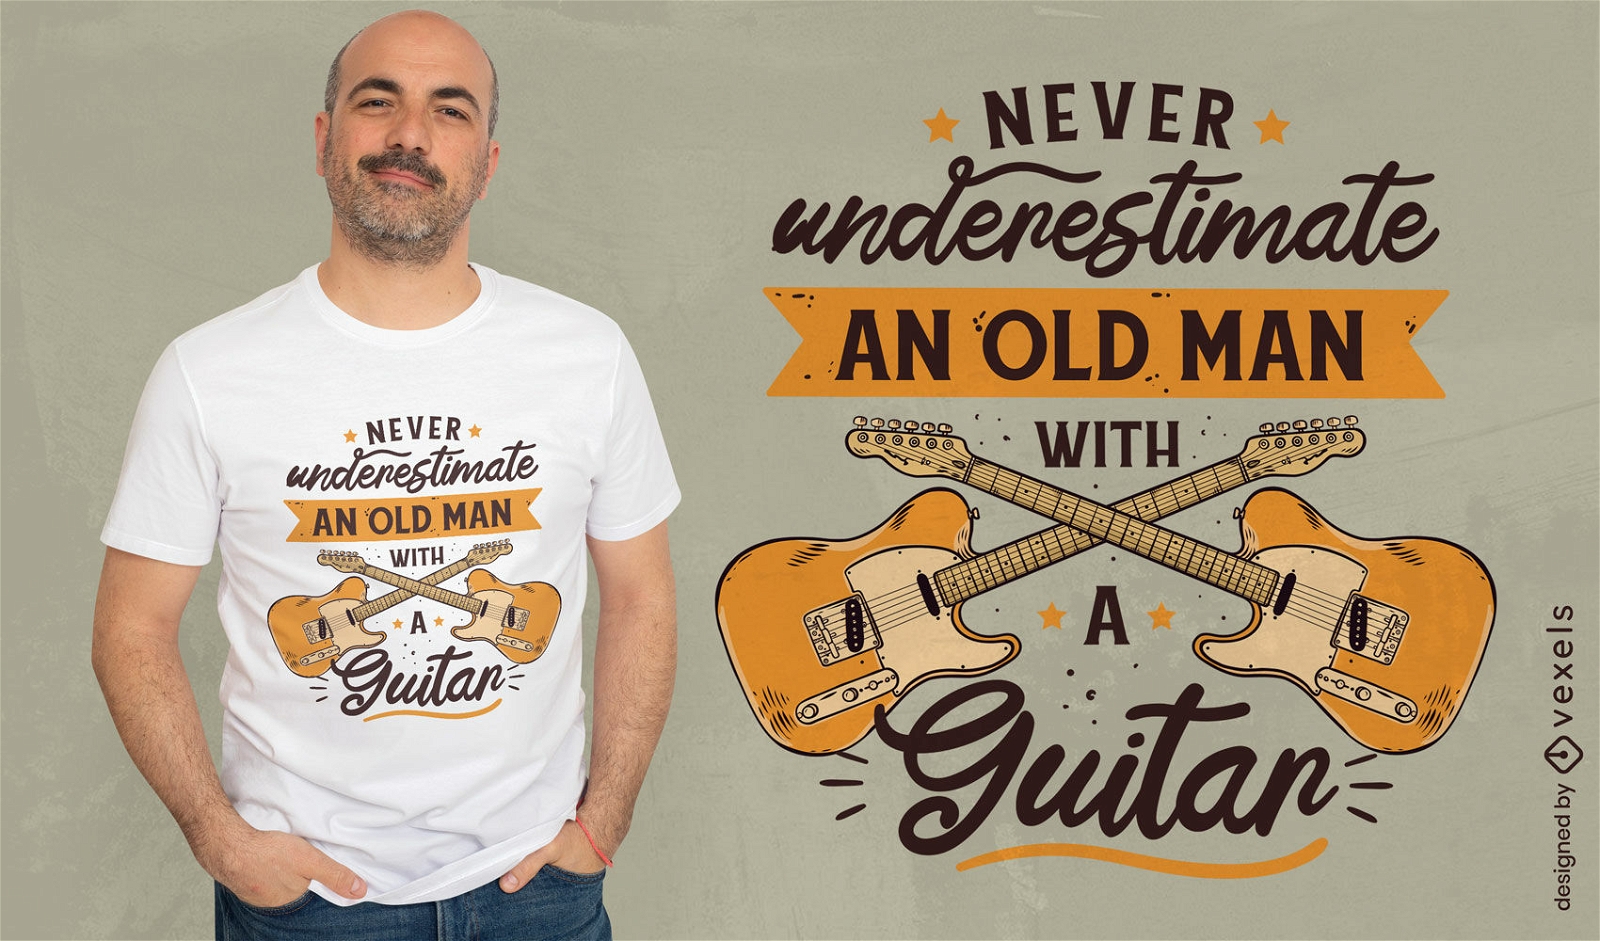 Velho com design de t-shirt de citação de guitarra